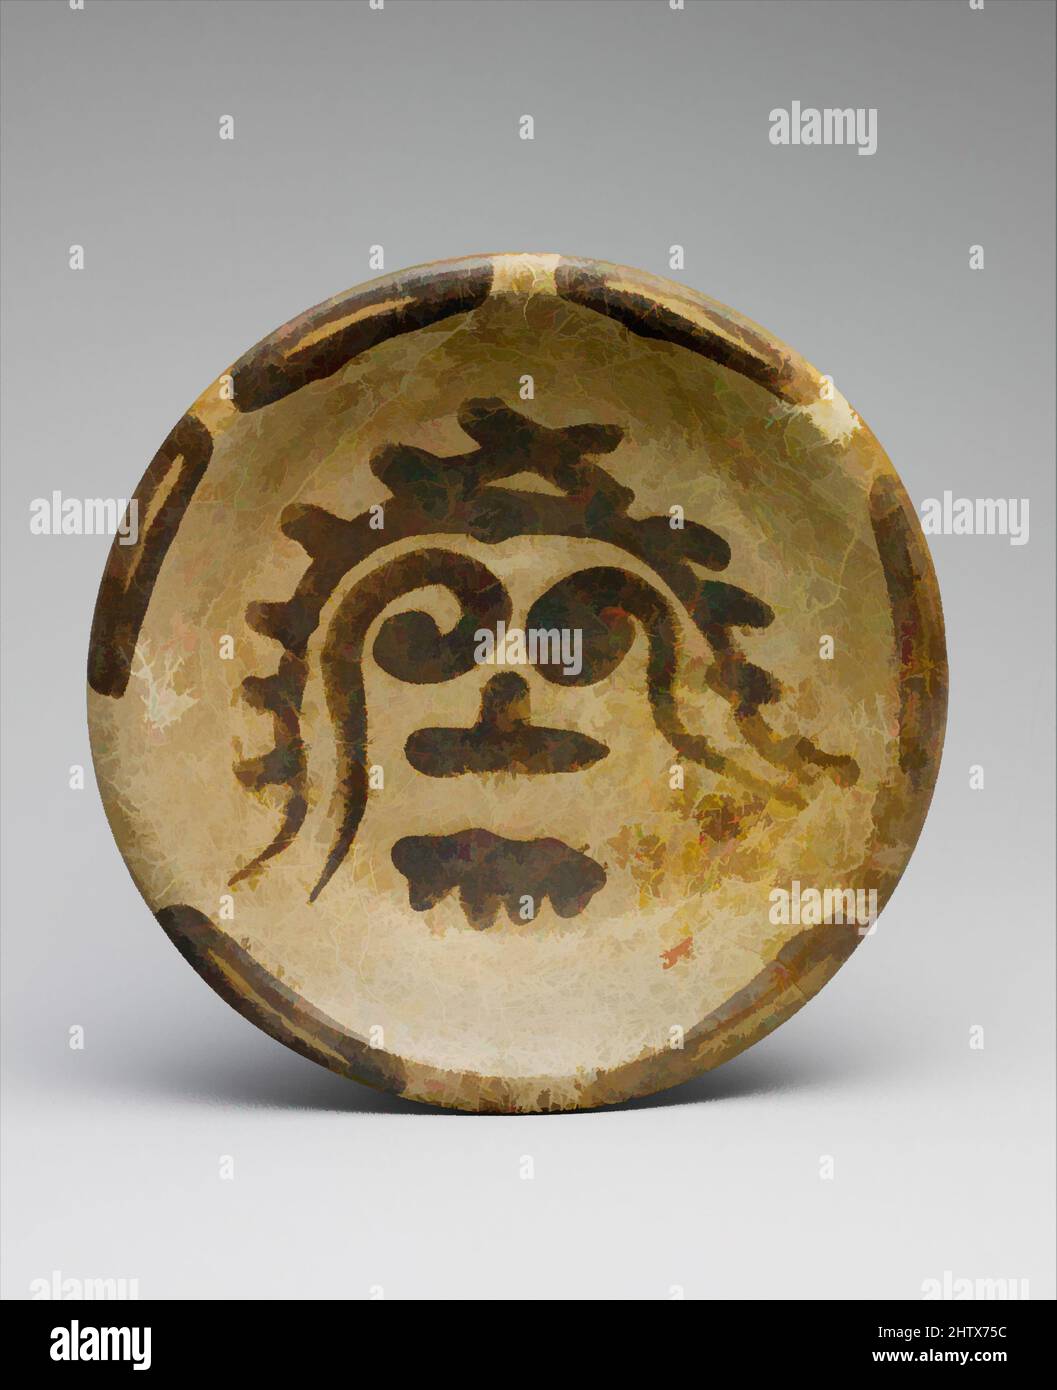 Kunst inspiriert von Stativplatte, 9.–10. Jahrhundert, Mexiko, Mesoamerika, Maya, Keramik, H. 2 1/2 x Durchm. 10 7/8 Zoll (6,4 x 27,6 cm), Keramik-Behälter, von Archäologen als Lattenware bezeichnet, ist dieses Keramikgefäß eine Sorte, die besonders in den von Artotop modernisierten, klassischen Werken mit einem Schuss Moderne im Norden Yucatans beliebt war. Formen, Farbe und Wert, auffällige visuelle Wirkung auf Kunst. Emotionen durch Freiheit von Kunstwerken auf zeitgemäße Weise. Eine zeitlose Botschaft, die eine wild kreative neue Richtung verfolgt. Künstler, die sich dem digitalen Medium zuwenden und die Artotop NFT erschaffen Stockfoto